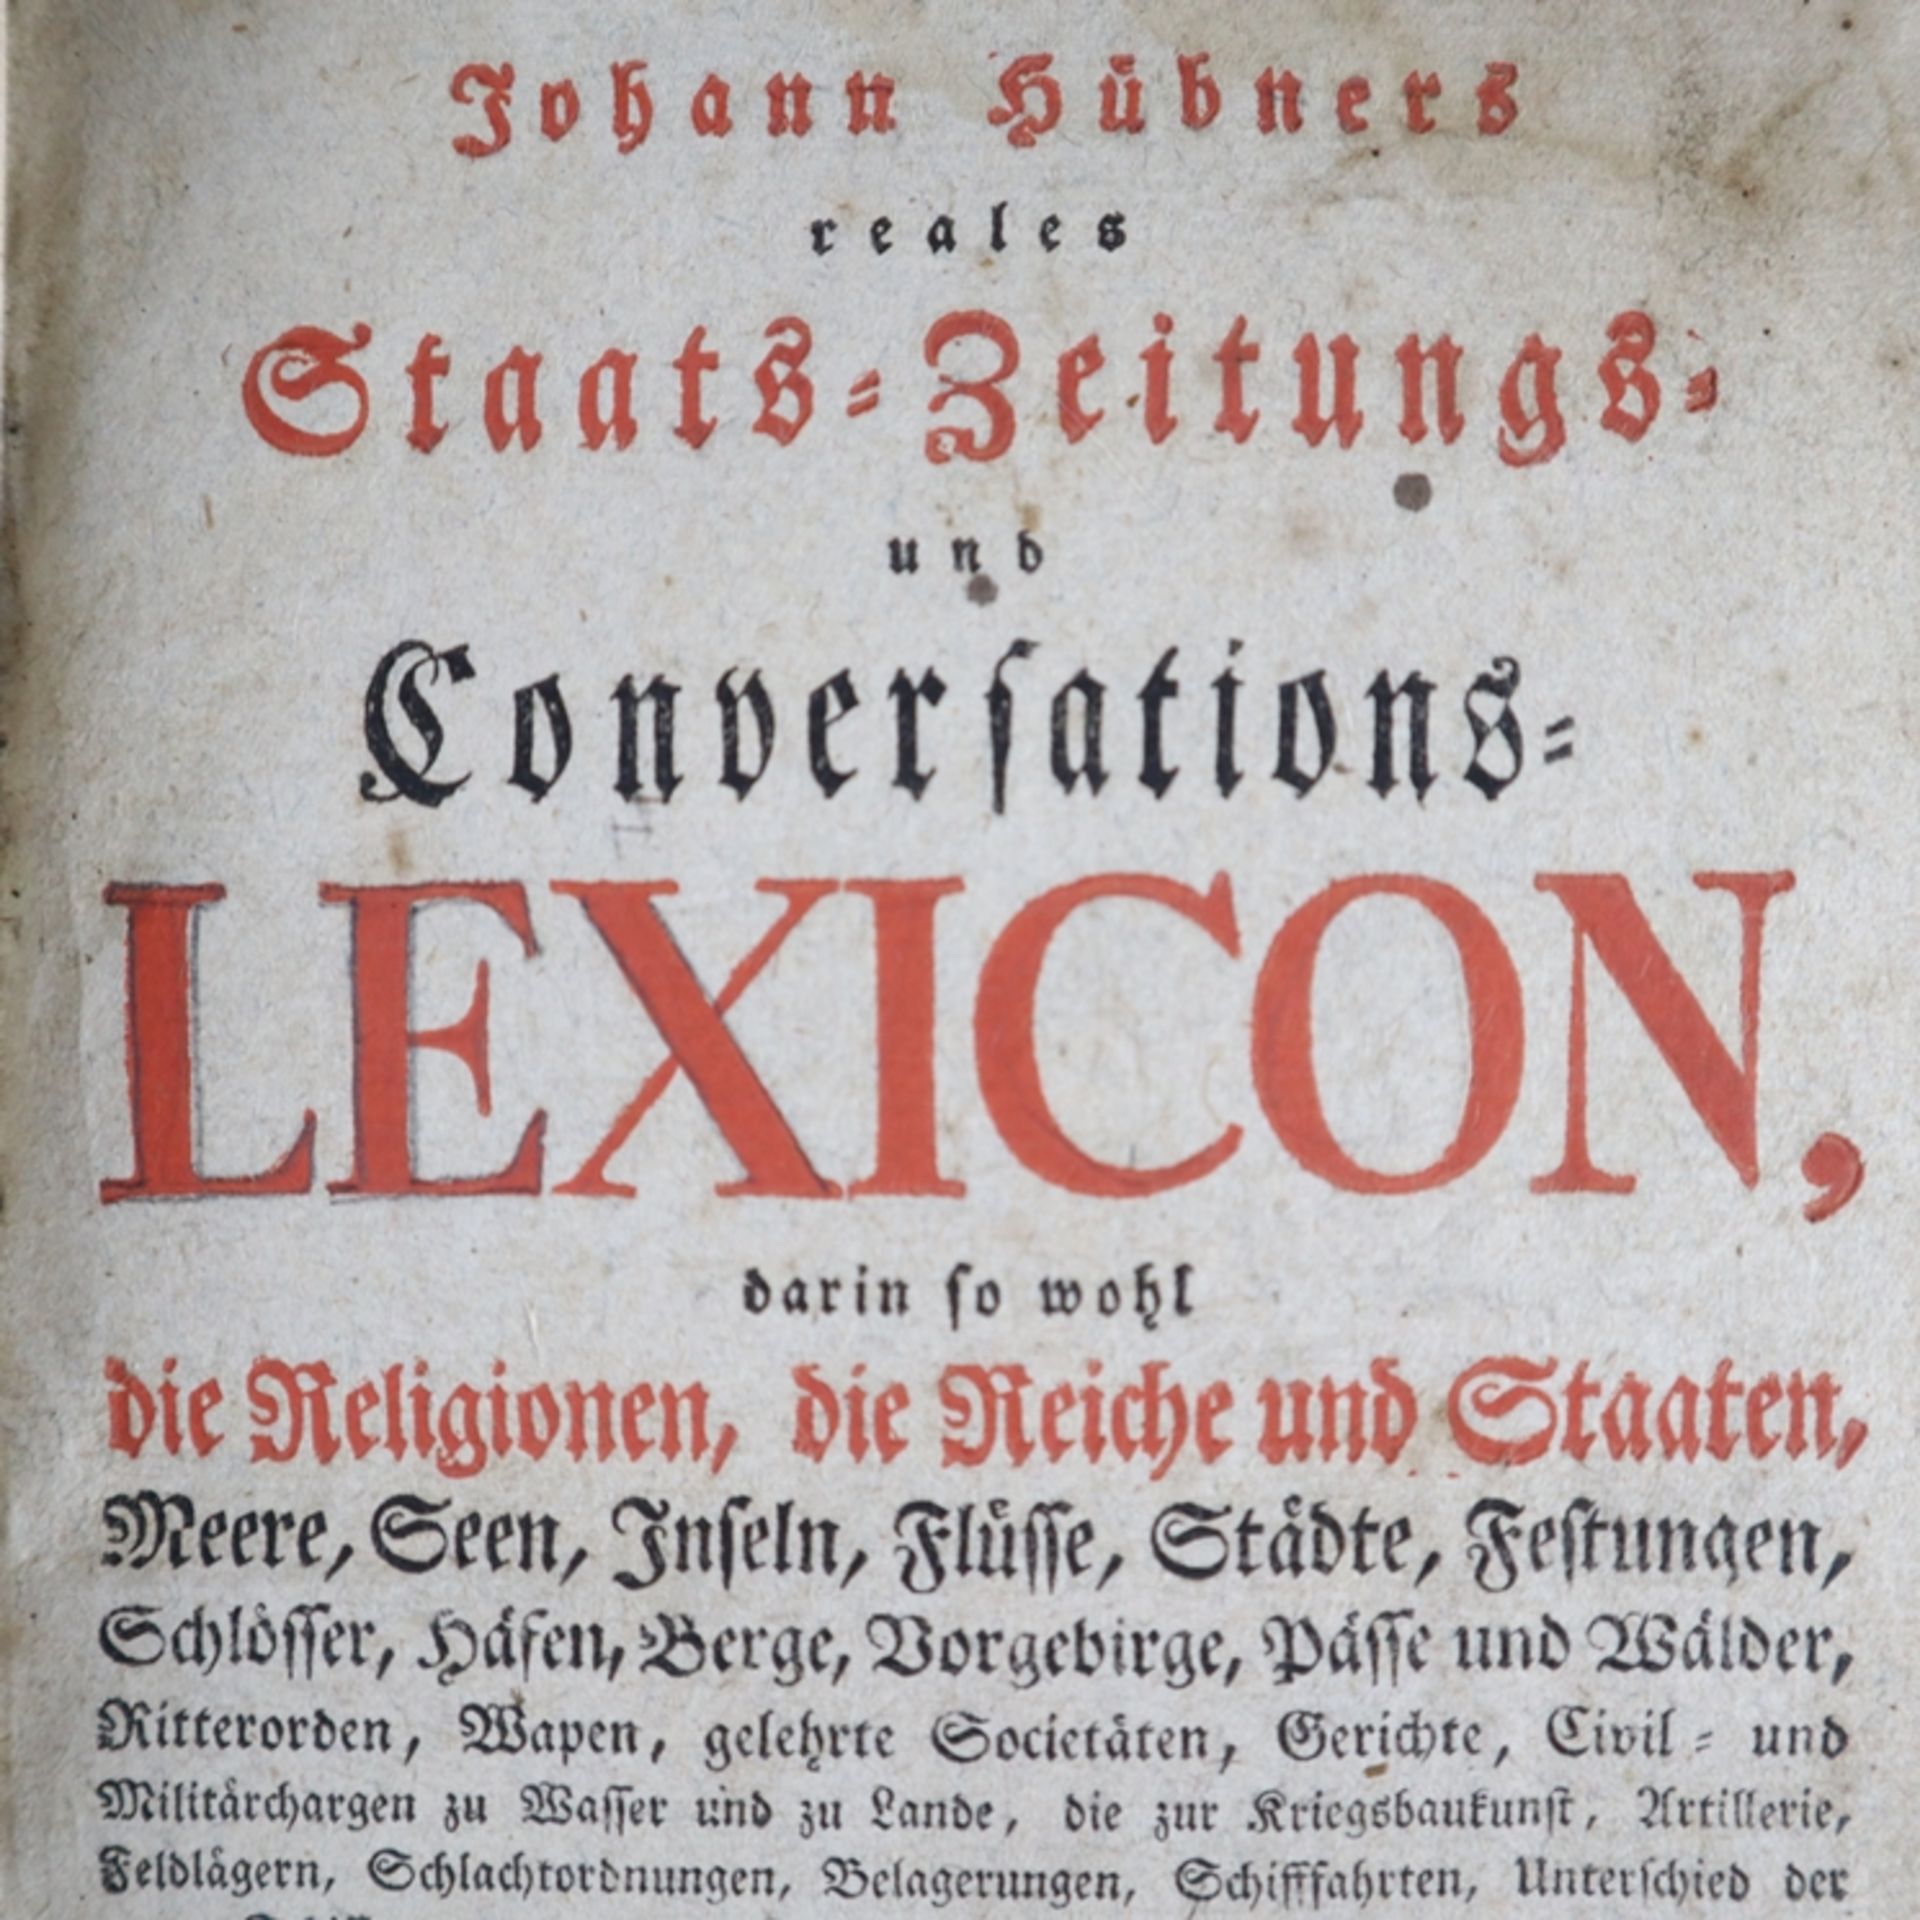 Hübner, Johann - Johann Hübners Reales Staats-Zeitungs-und Conversations-Lexicon, Gleditsch, - Bild 2 aus 12